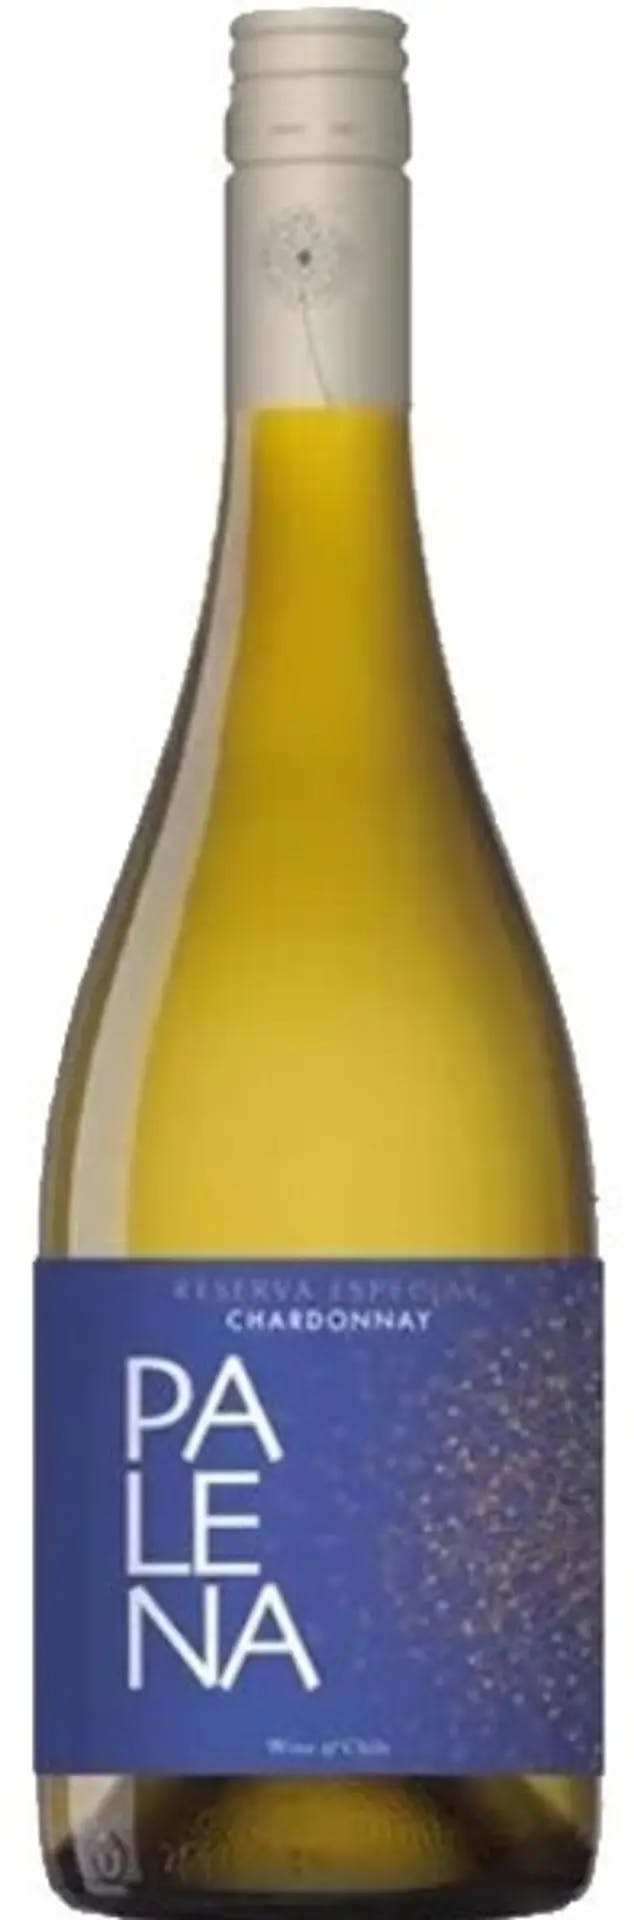 Palena Reserva Chardonnay